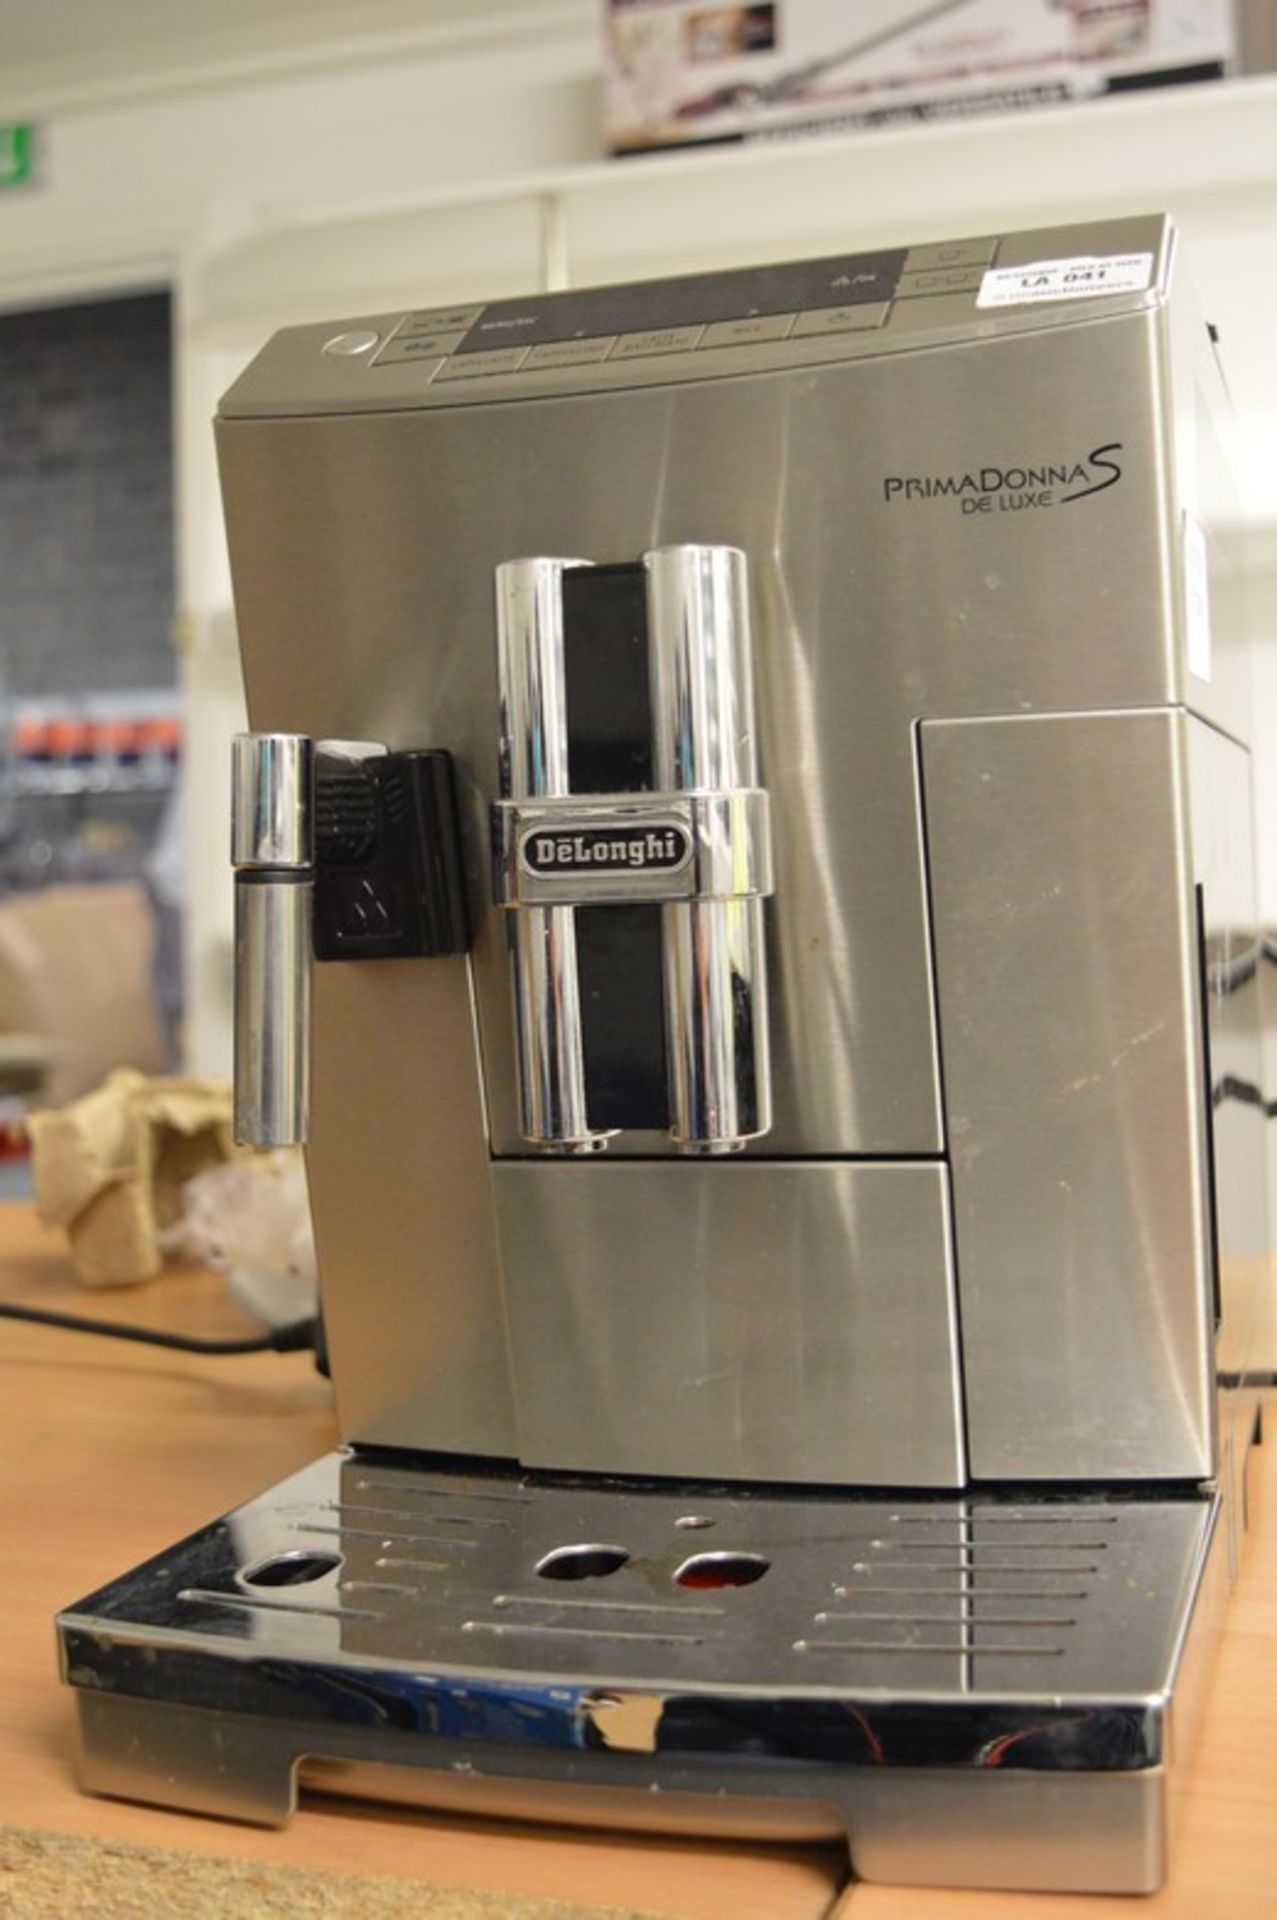 1 x PREMODONA S DELUXE CAPPUCCINO COFFEE MAKER MACHINE RRP £850 14.10.16 *PLEASE NOTE THAT THE BID